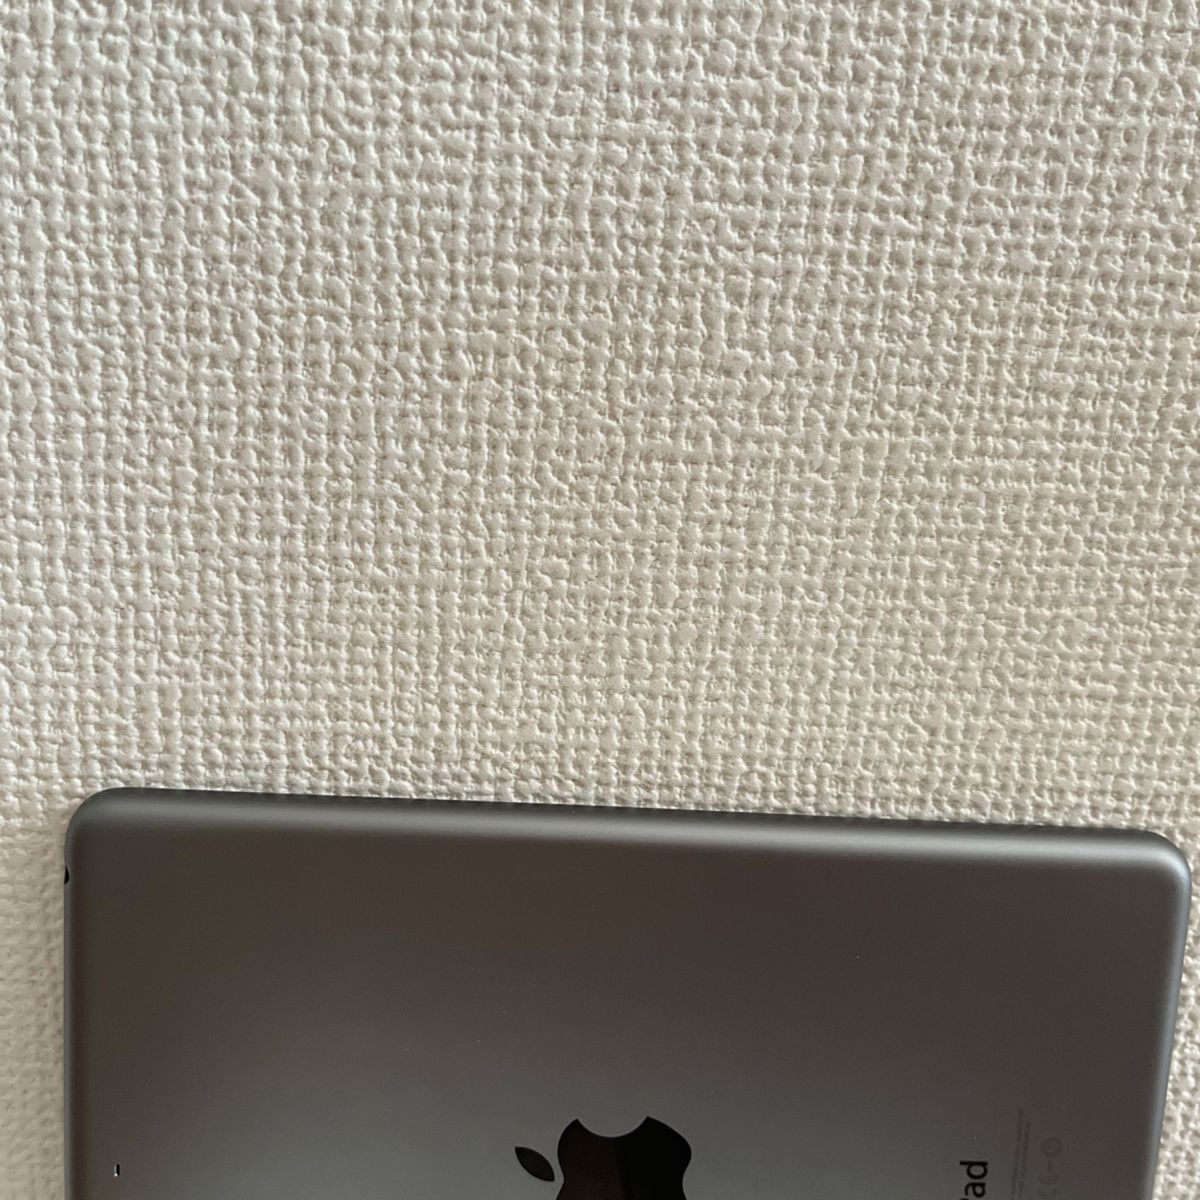 ME277J/A  iPad mini Wi-Fi 32GB Space Gray A1489  Apple ジャンク